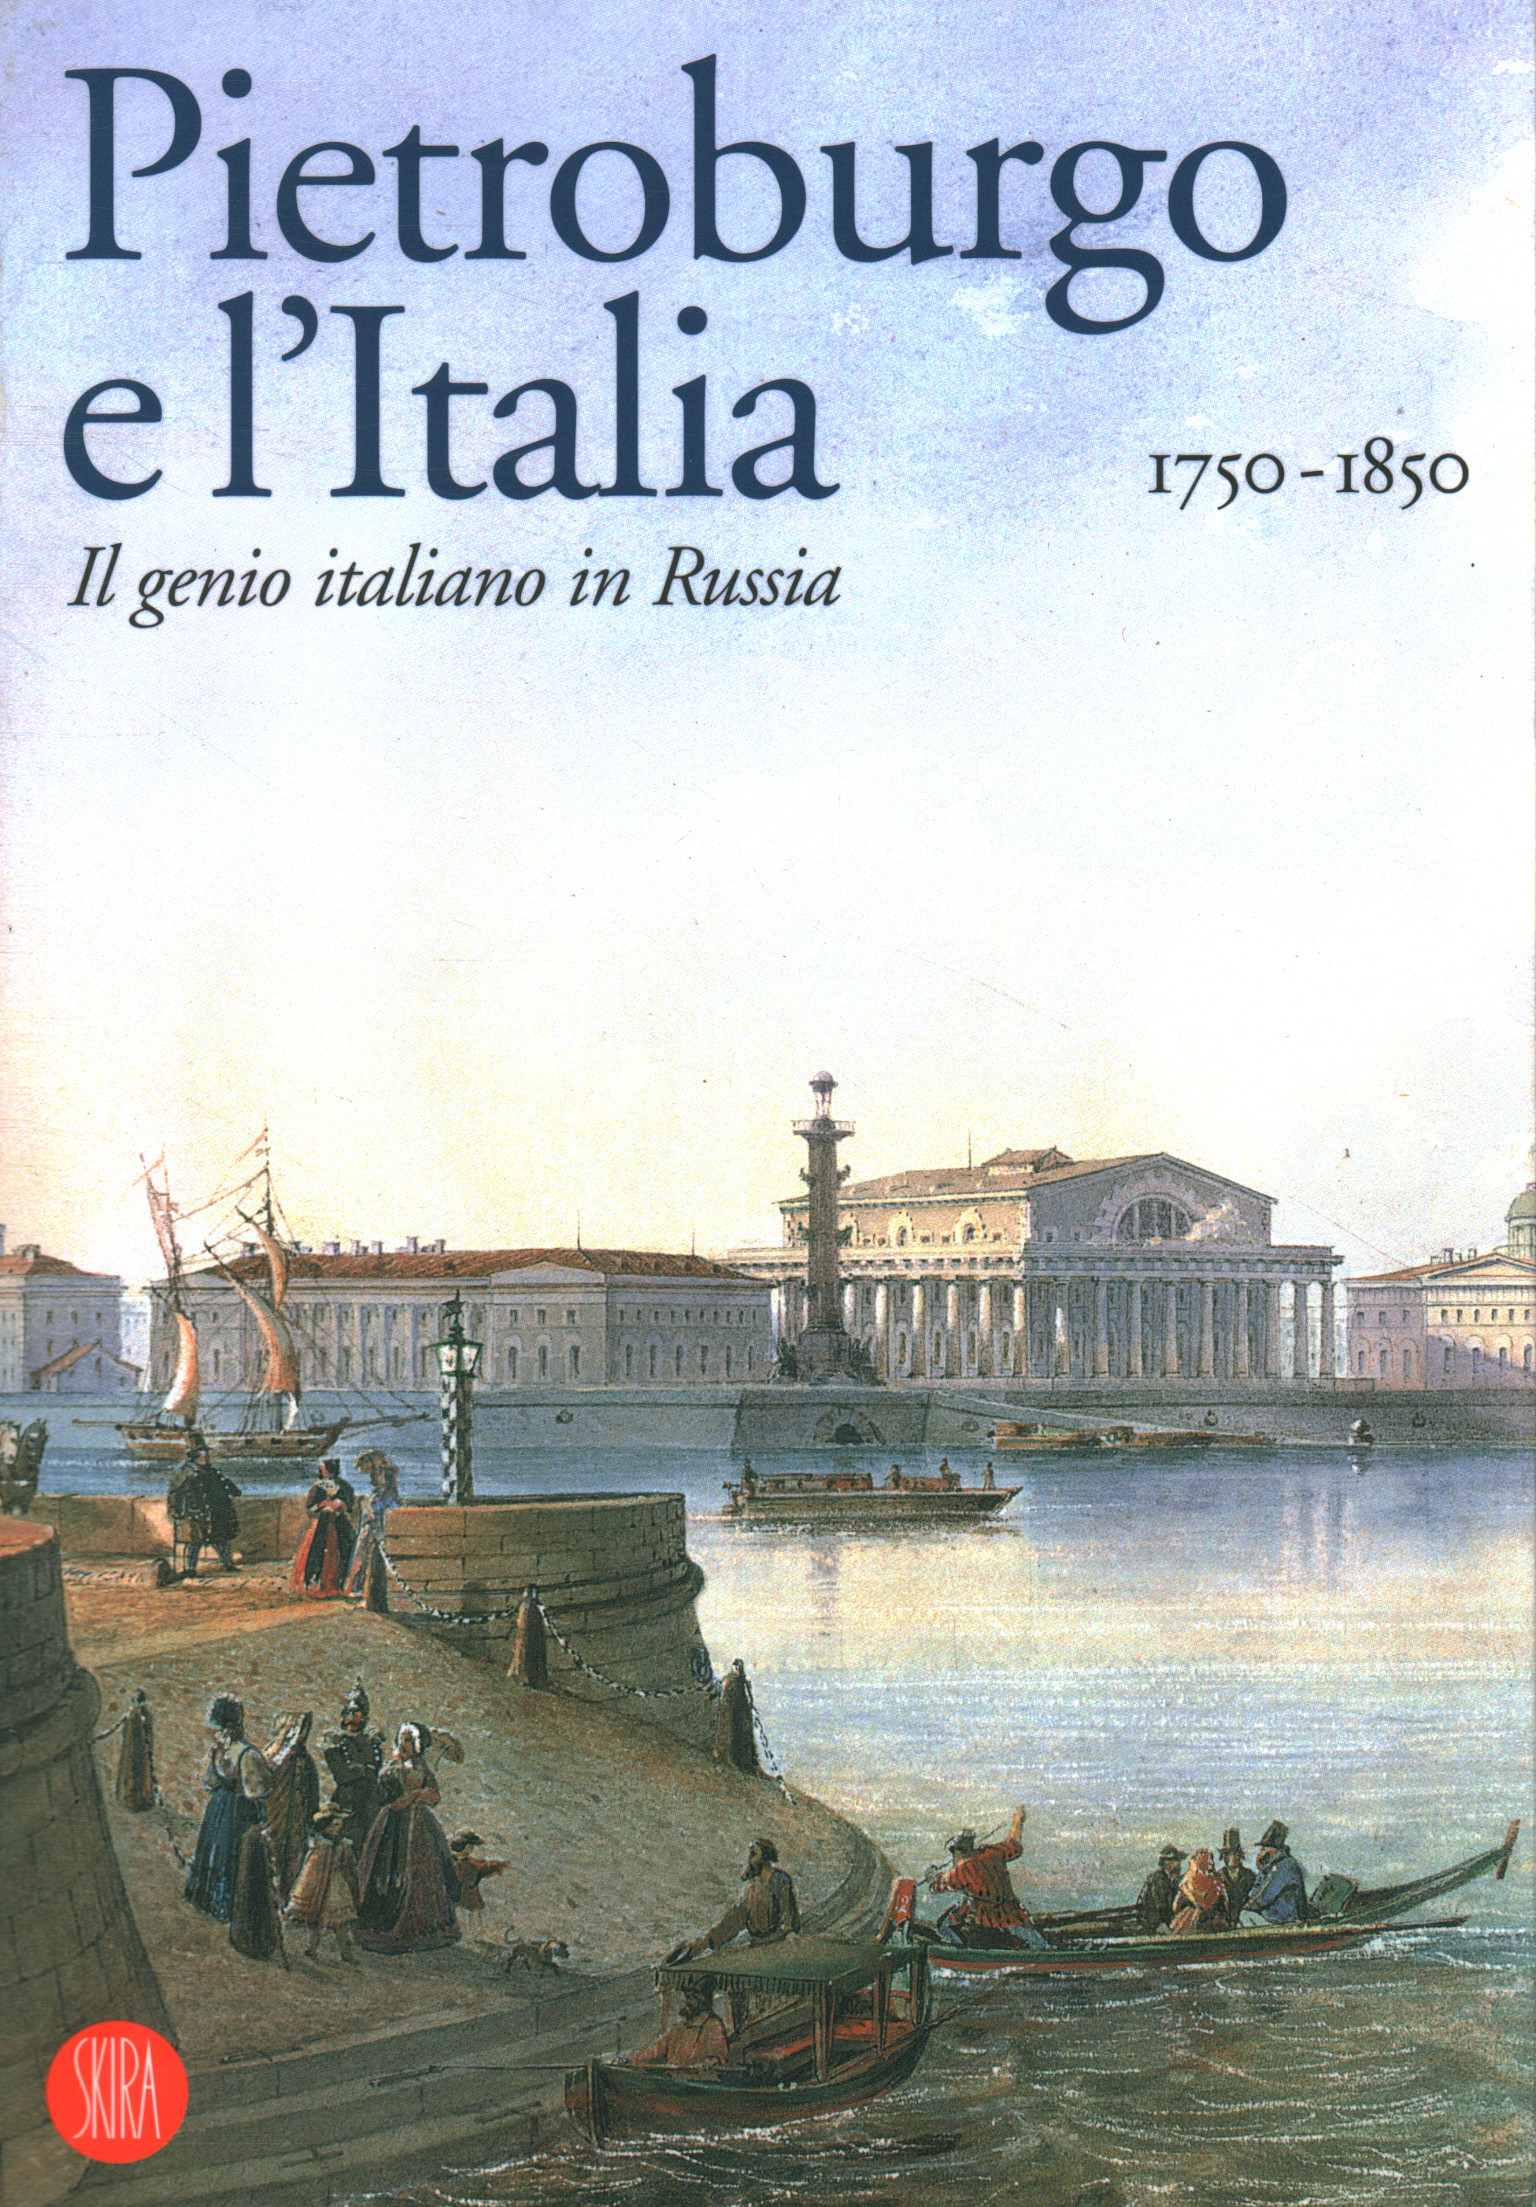 Petersburg und Italien 1750-1850